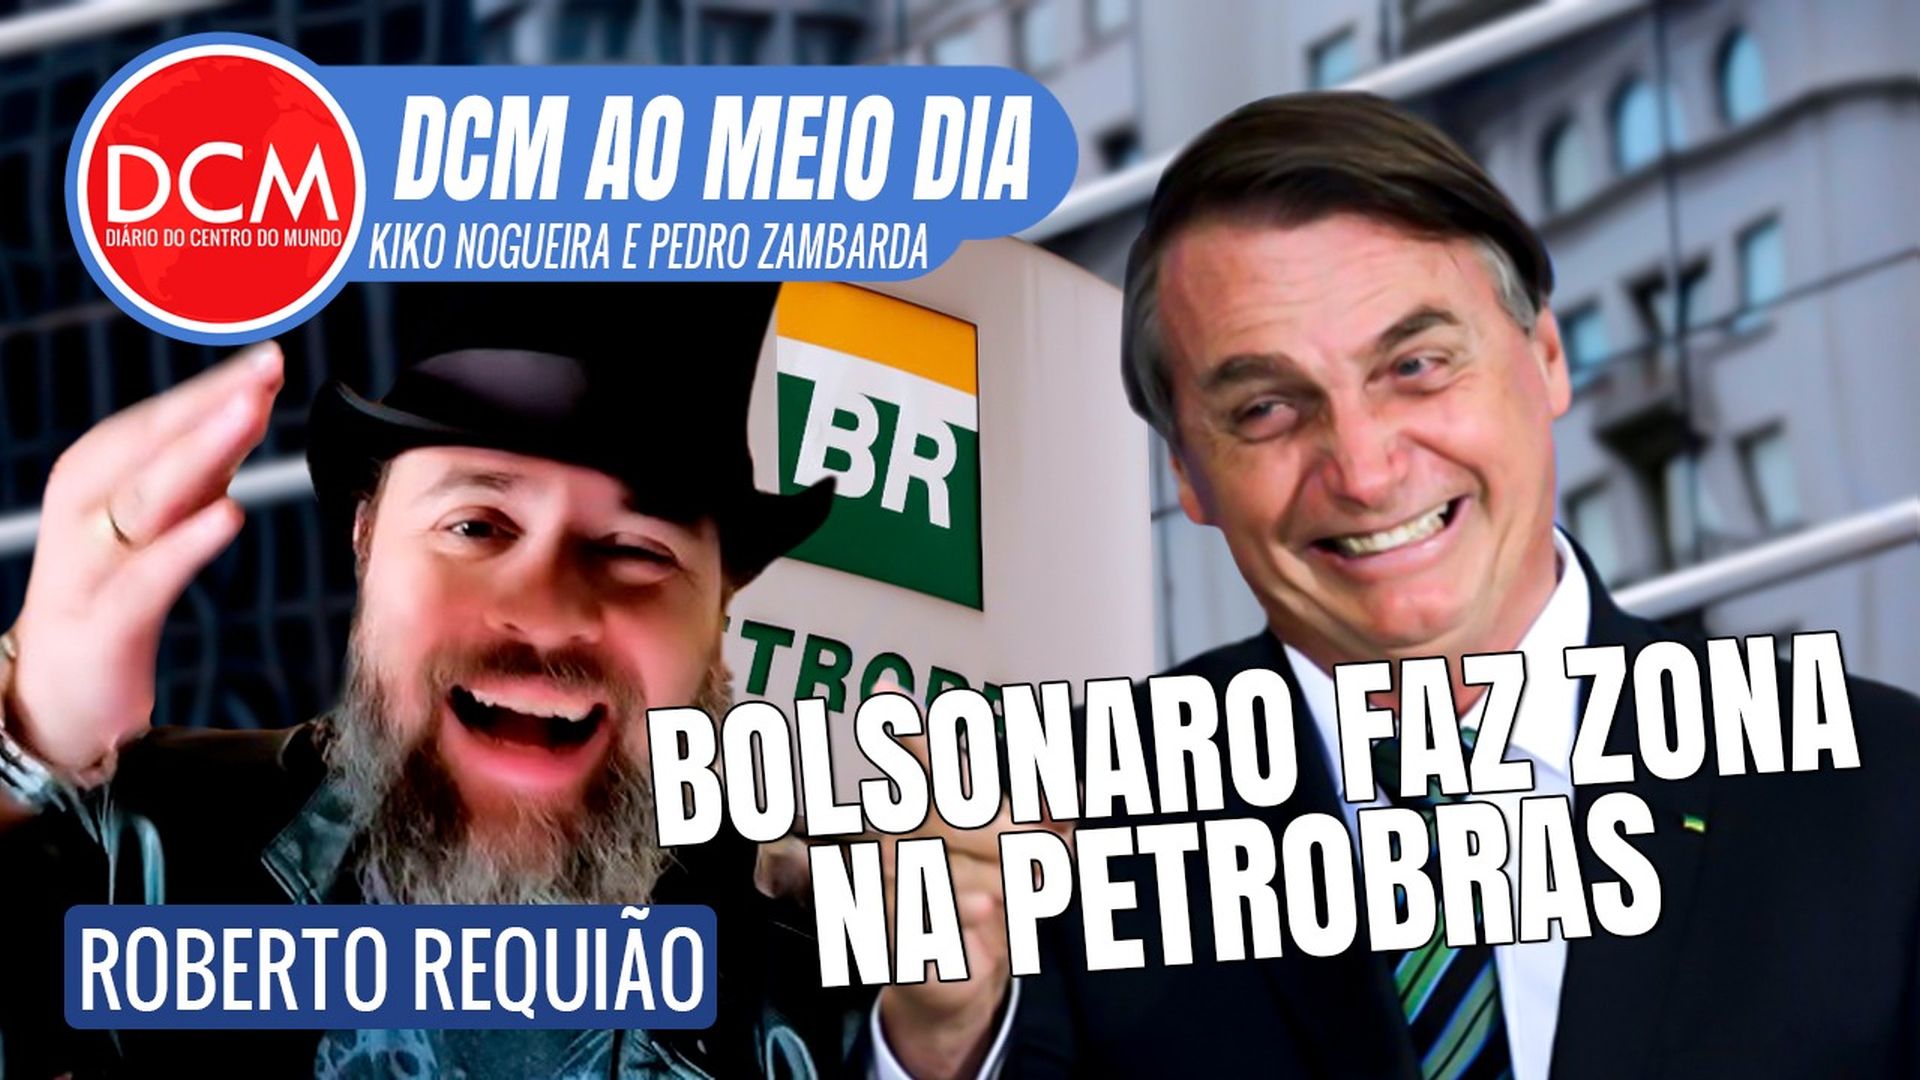 DCM Ao Meio-Dia: Nando Moura revela reunião de Moro com MBL: “broxou”; Requião fala de Petrobras e Bolsonaro